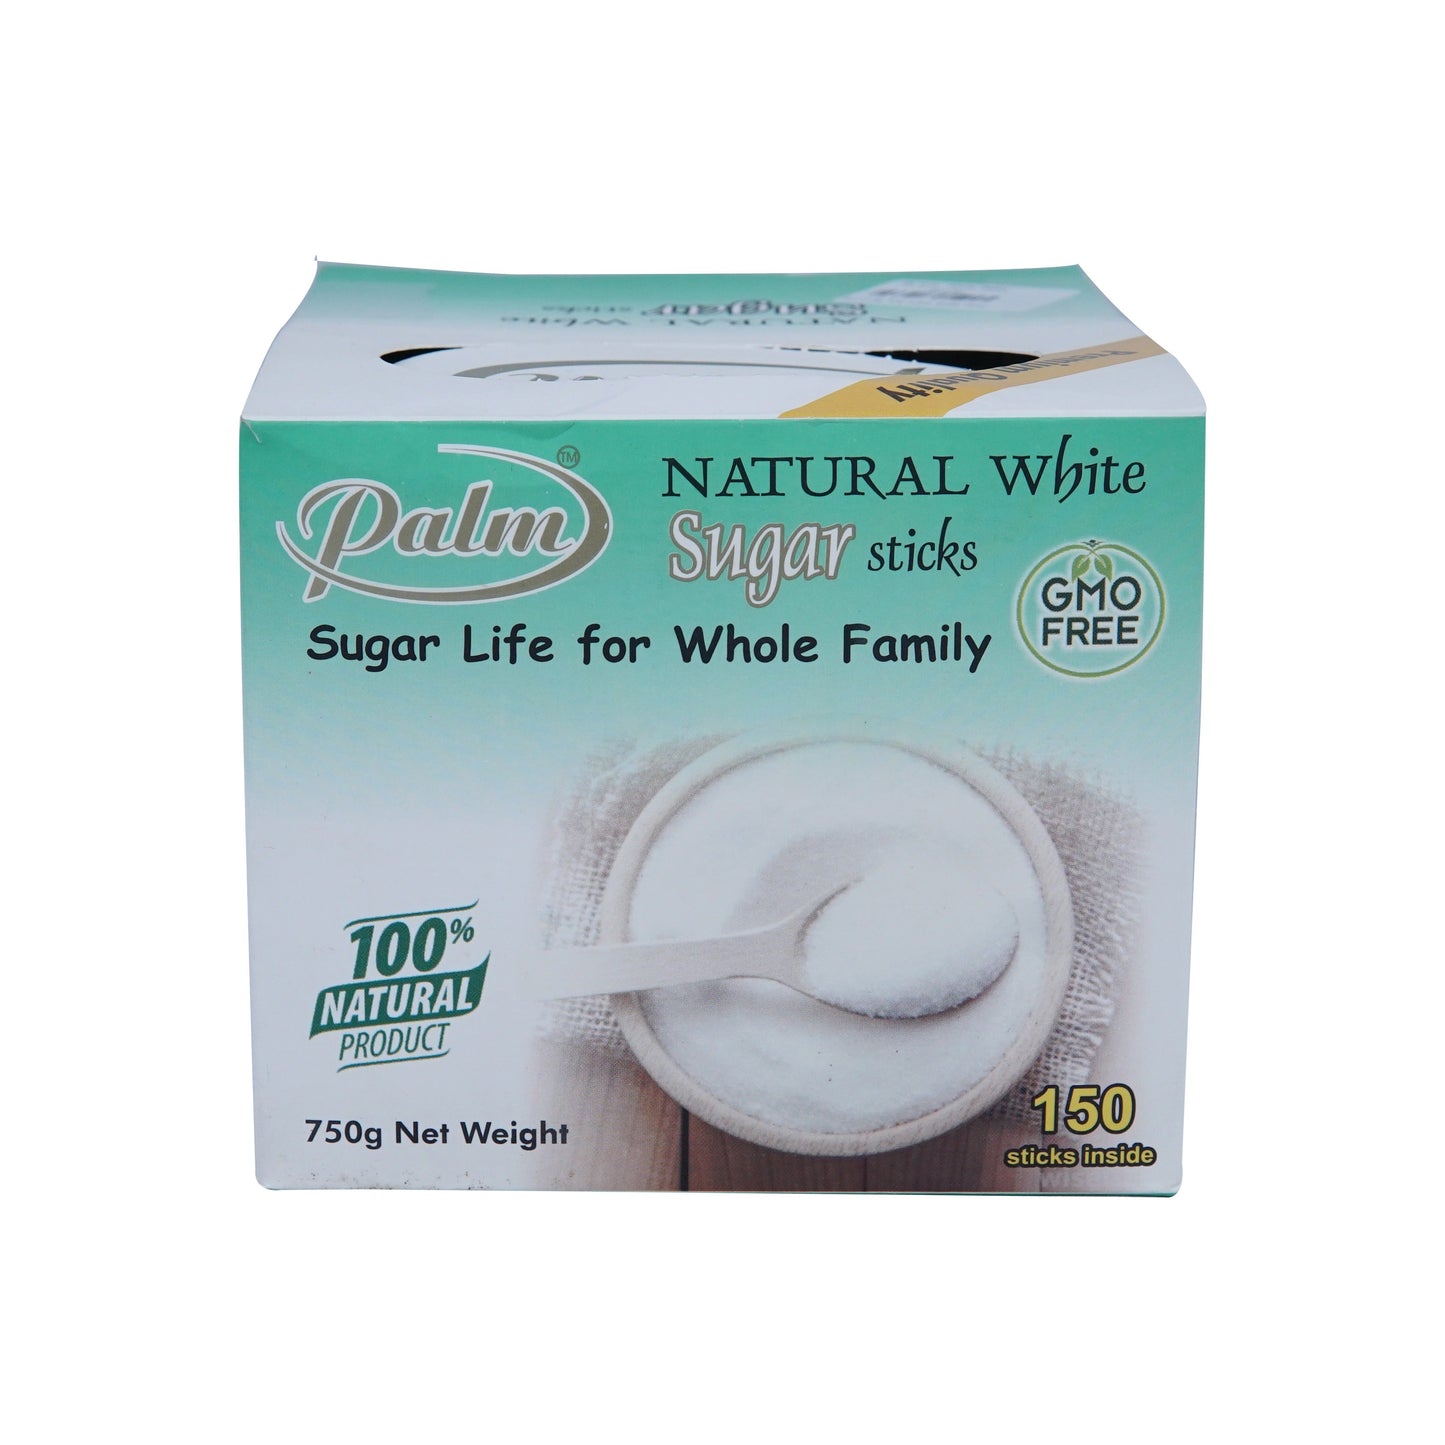 Palm Natural White Sugar Sticks 750g Box 150 Sticks